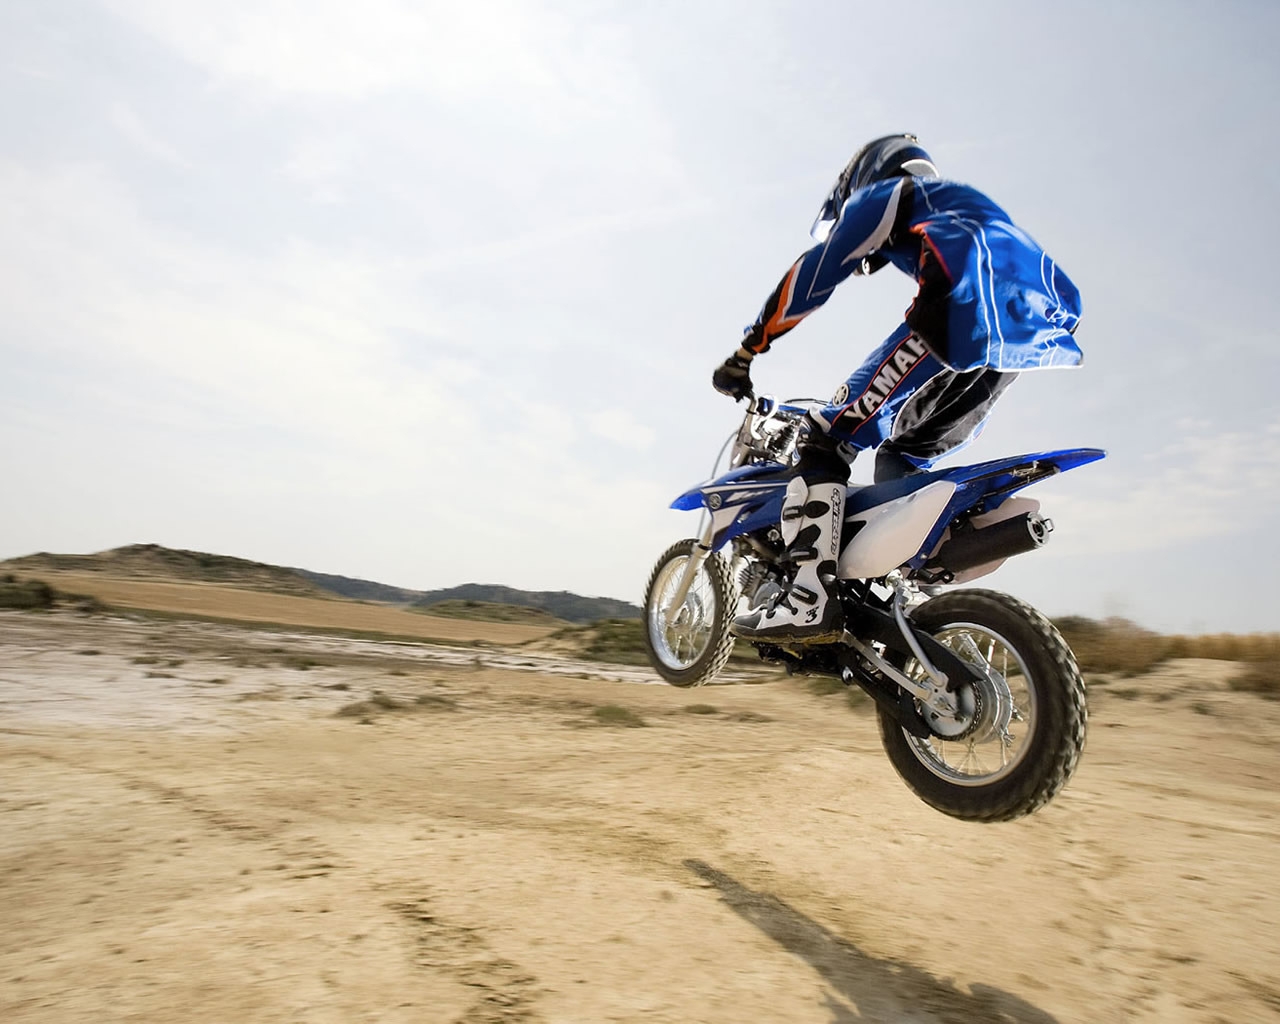 Desert Moto Race for 1280 x 1024 resolution